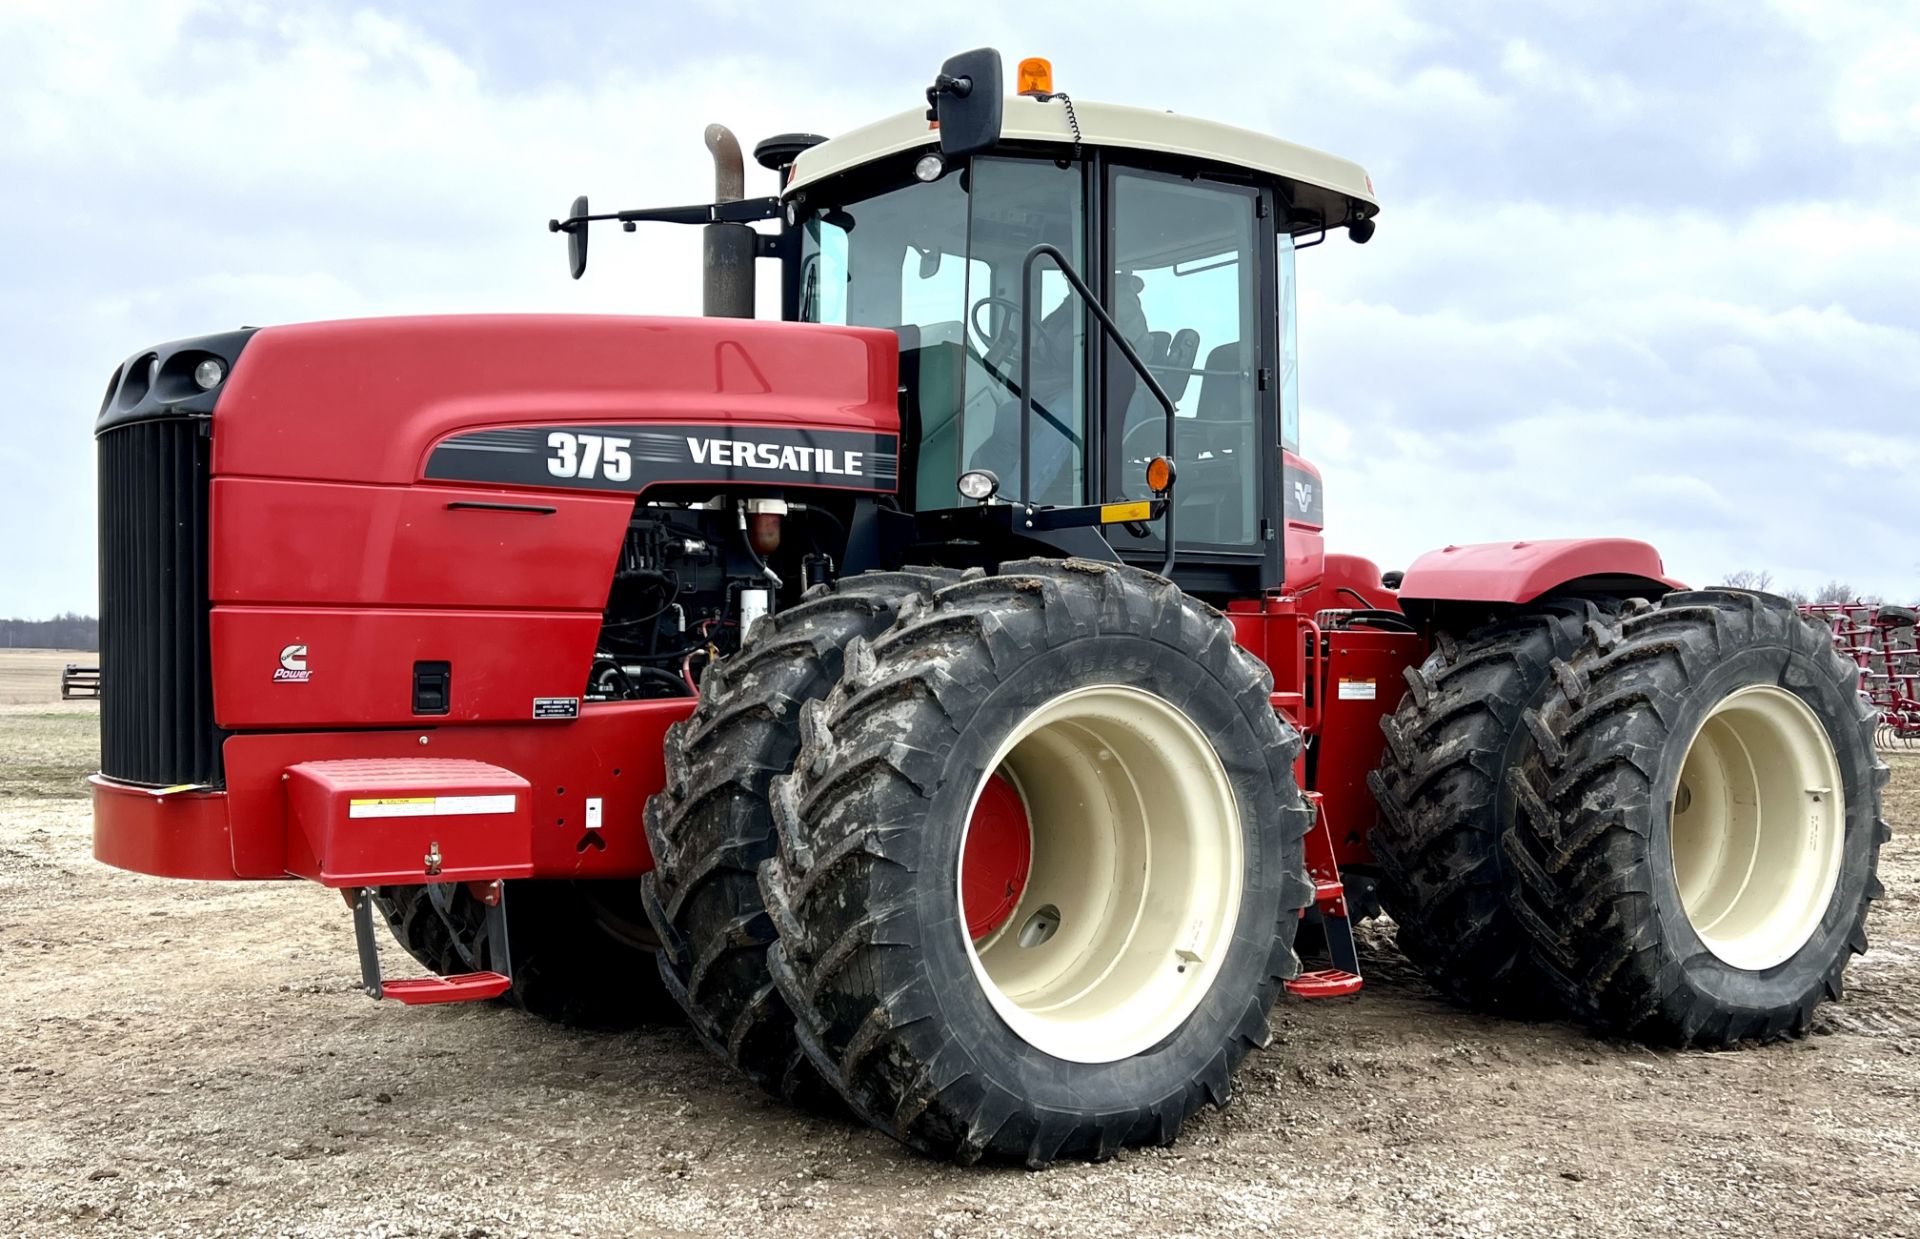 Versatile 375 Tractor